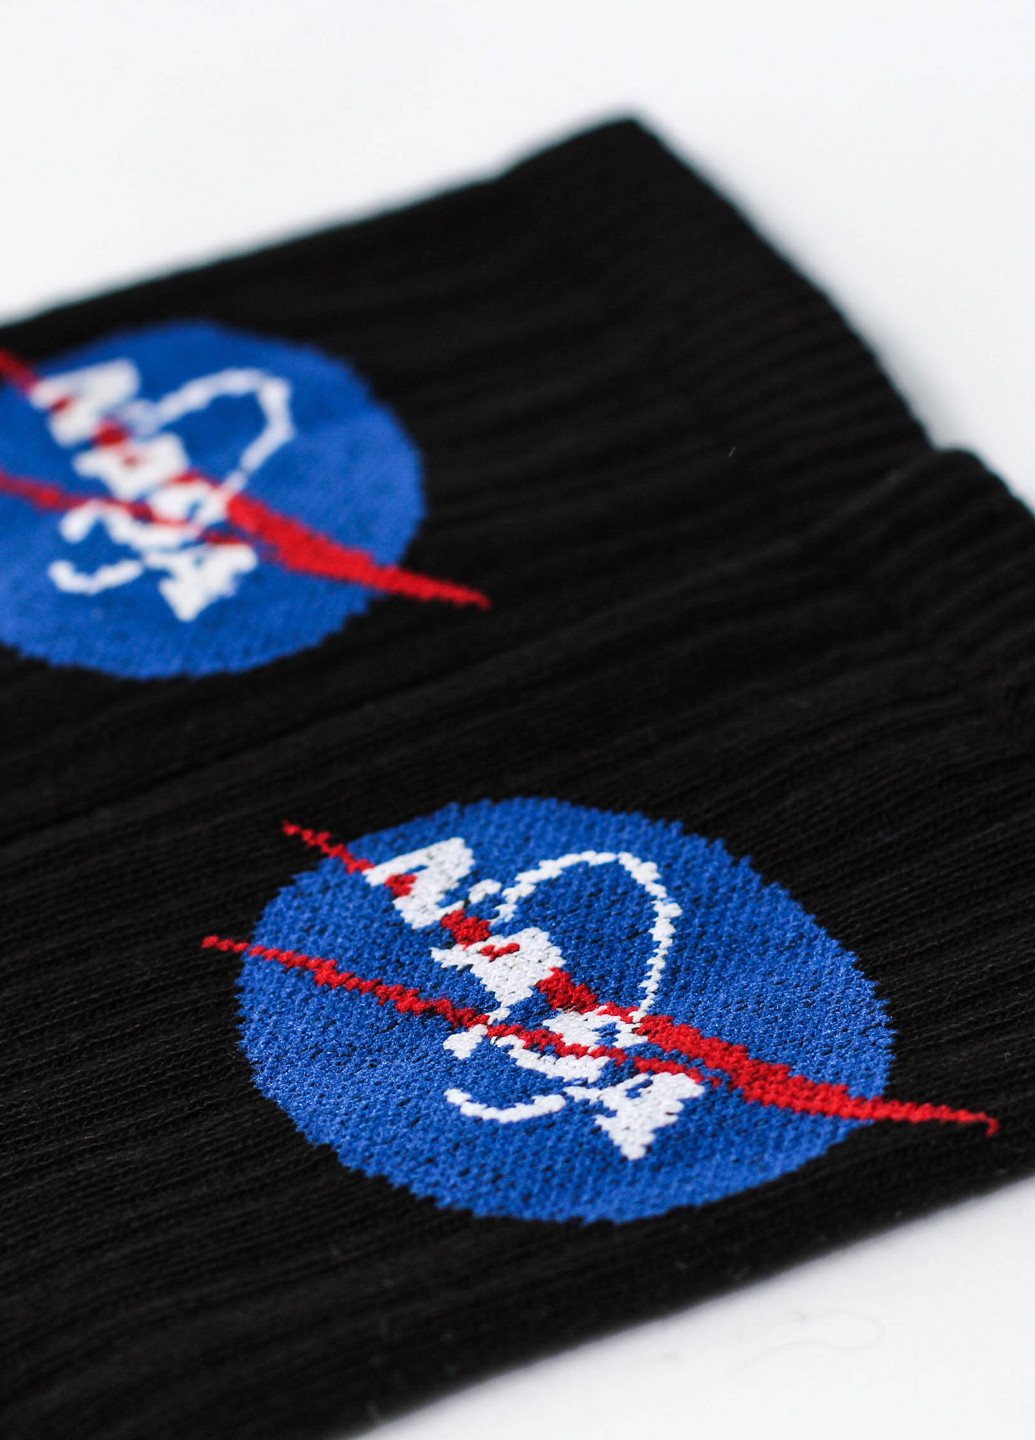 Мужские носки Premium NASA чёрные LOMM чёрные повседневные